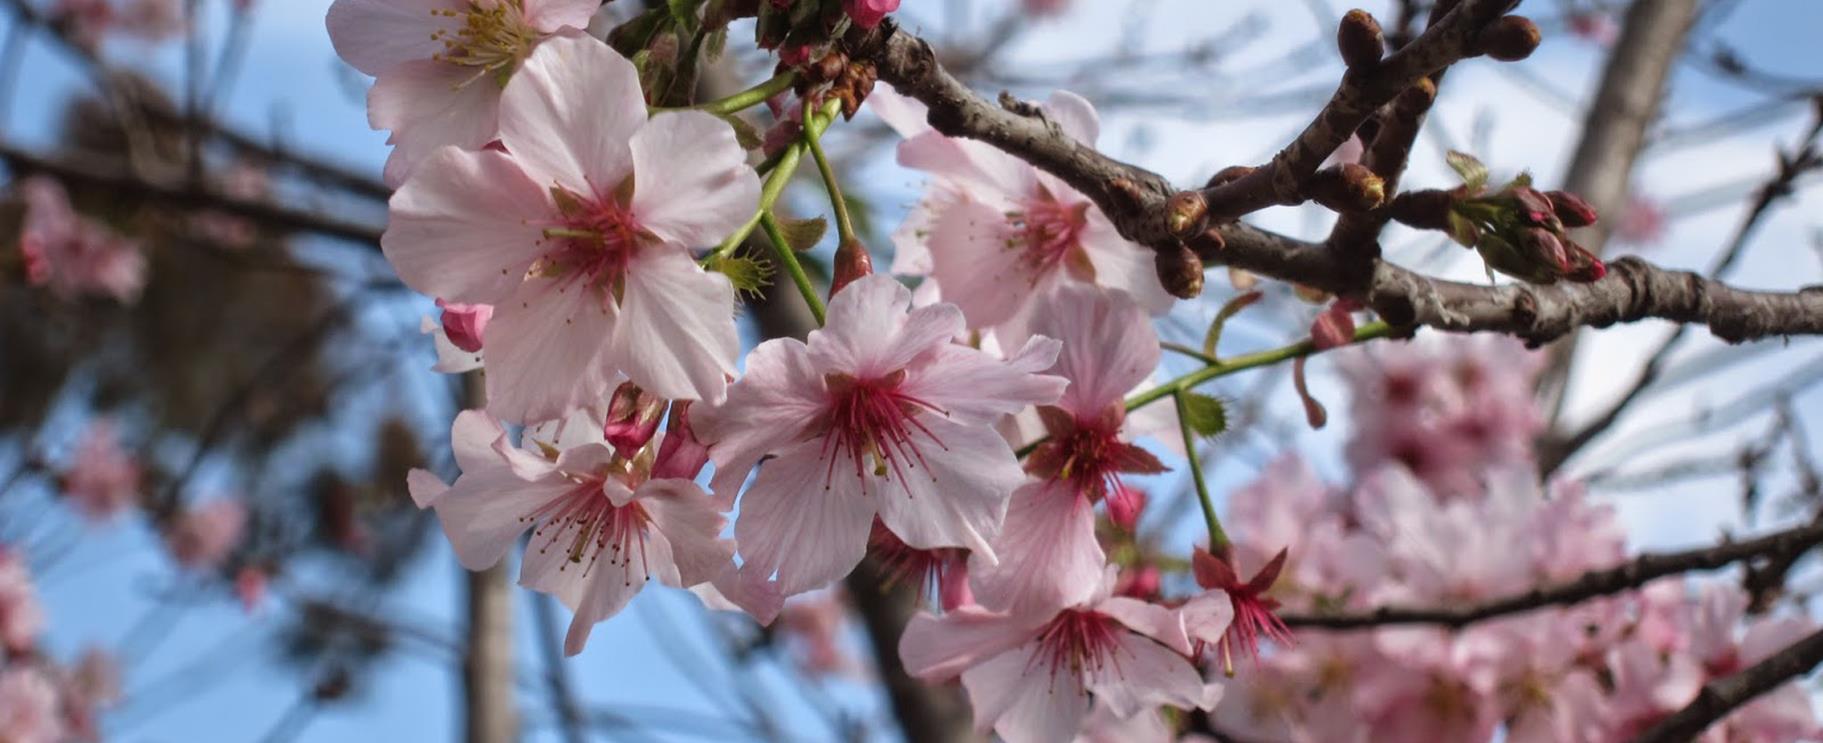 Cherry Blossom Festival - Sakura Matsuri